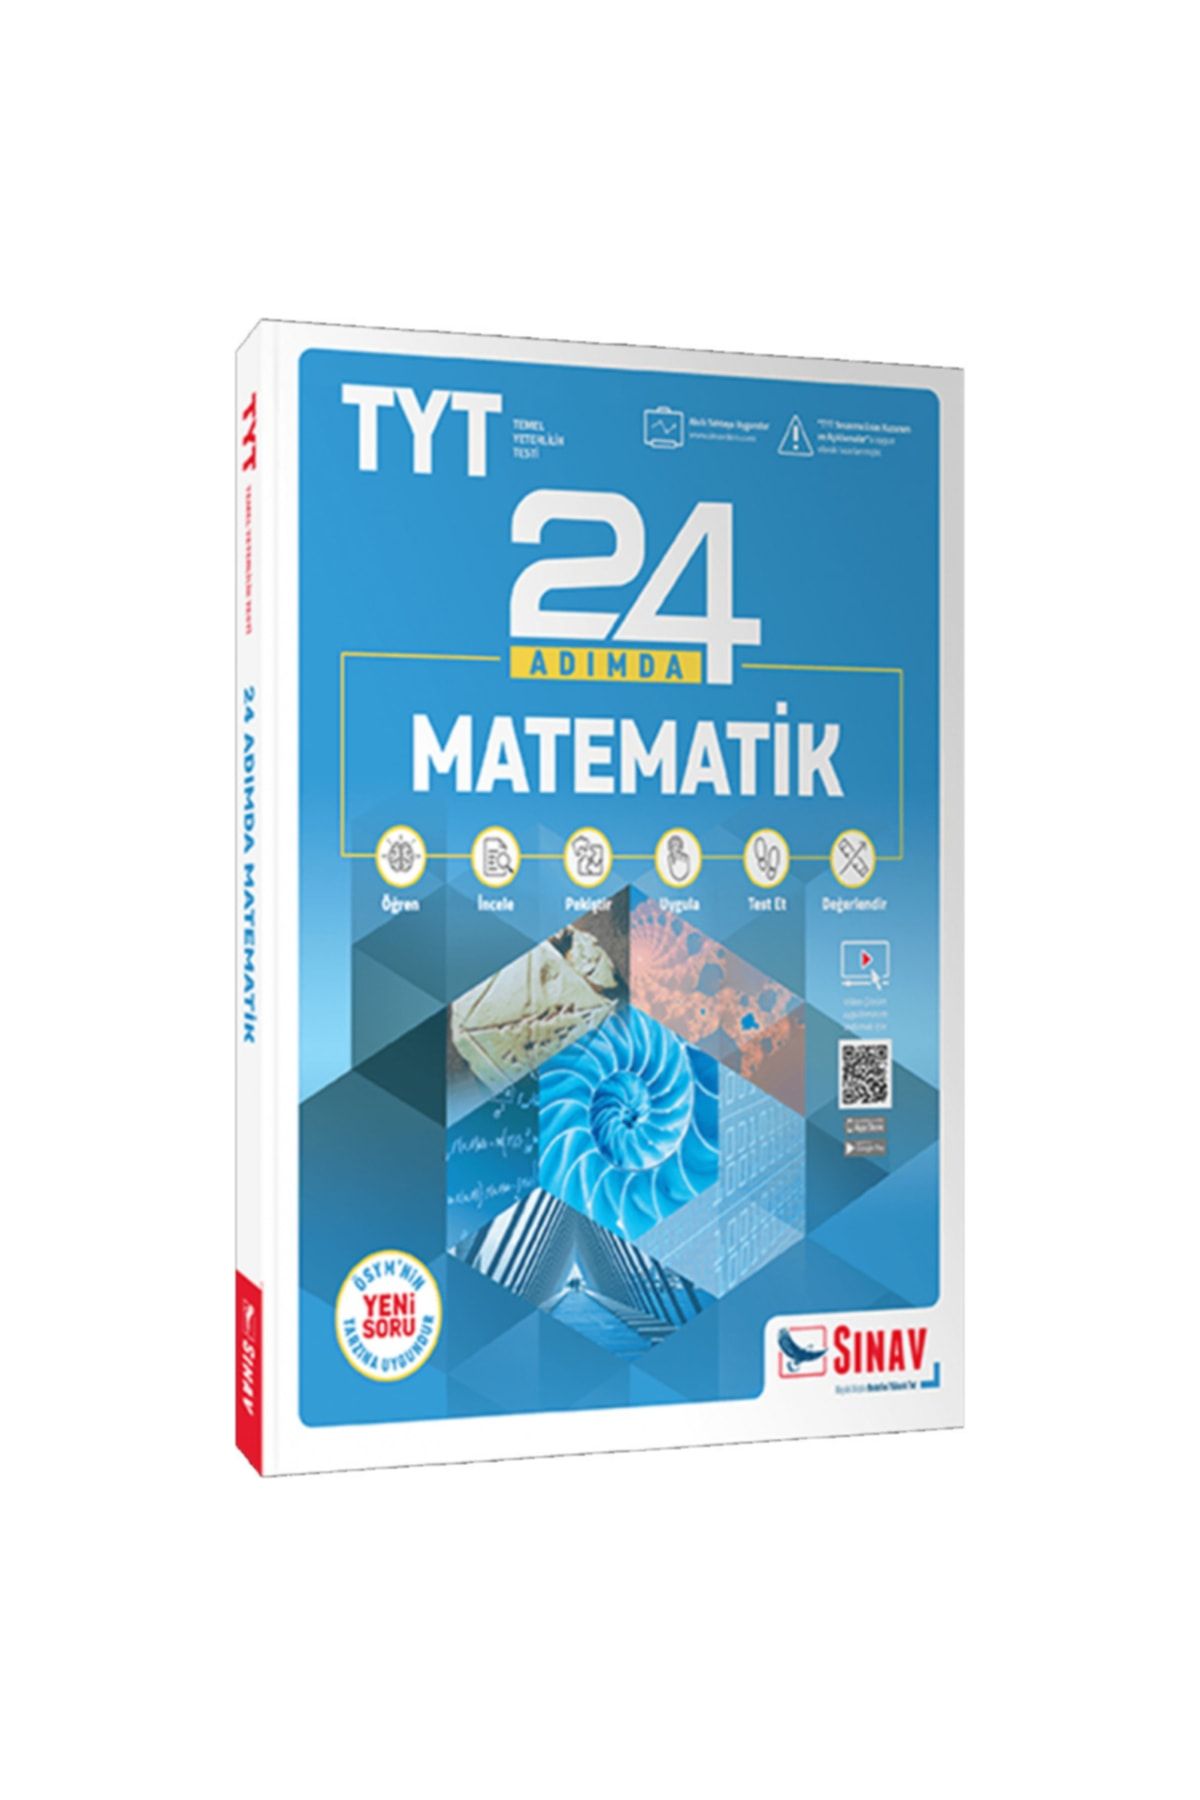 Sınav Yayınları Tyt 24 Adımda Matematik Konu Anlatımlı Soru Bankası Yeni